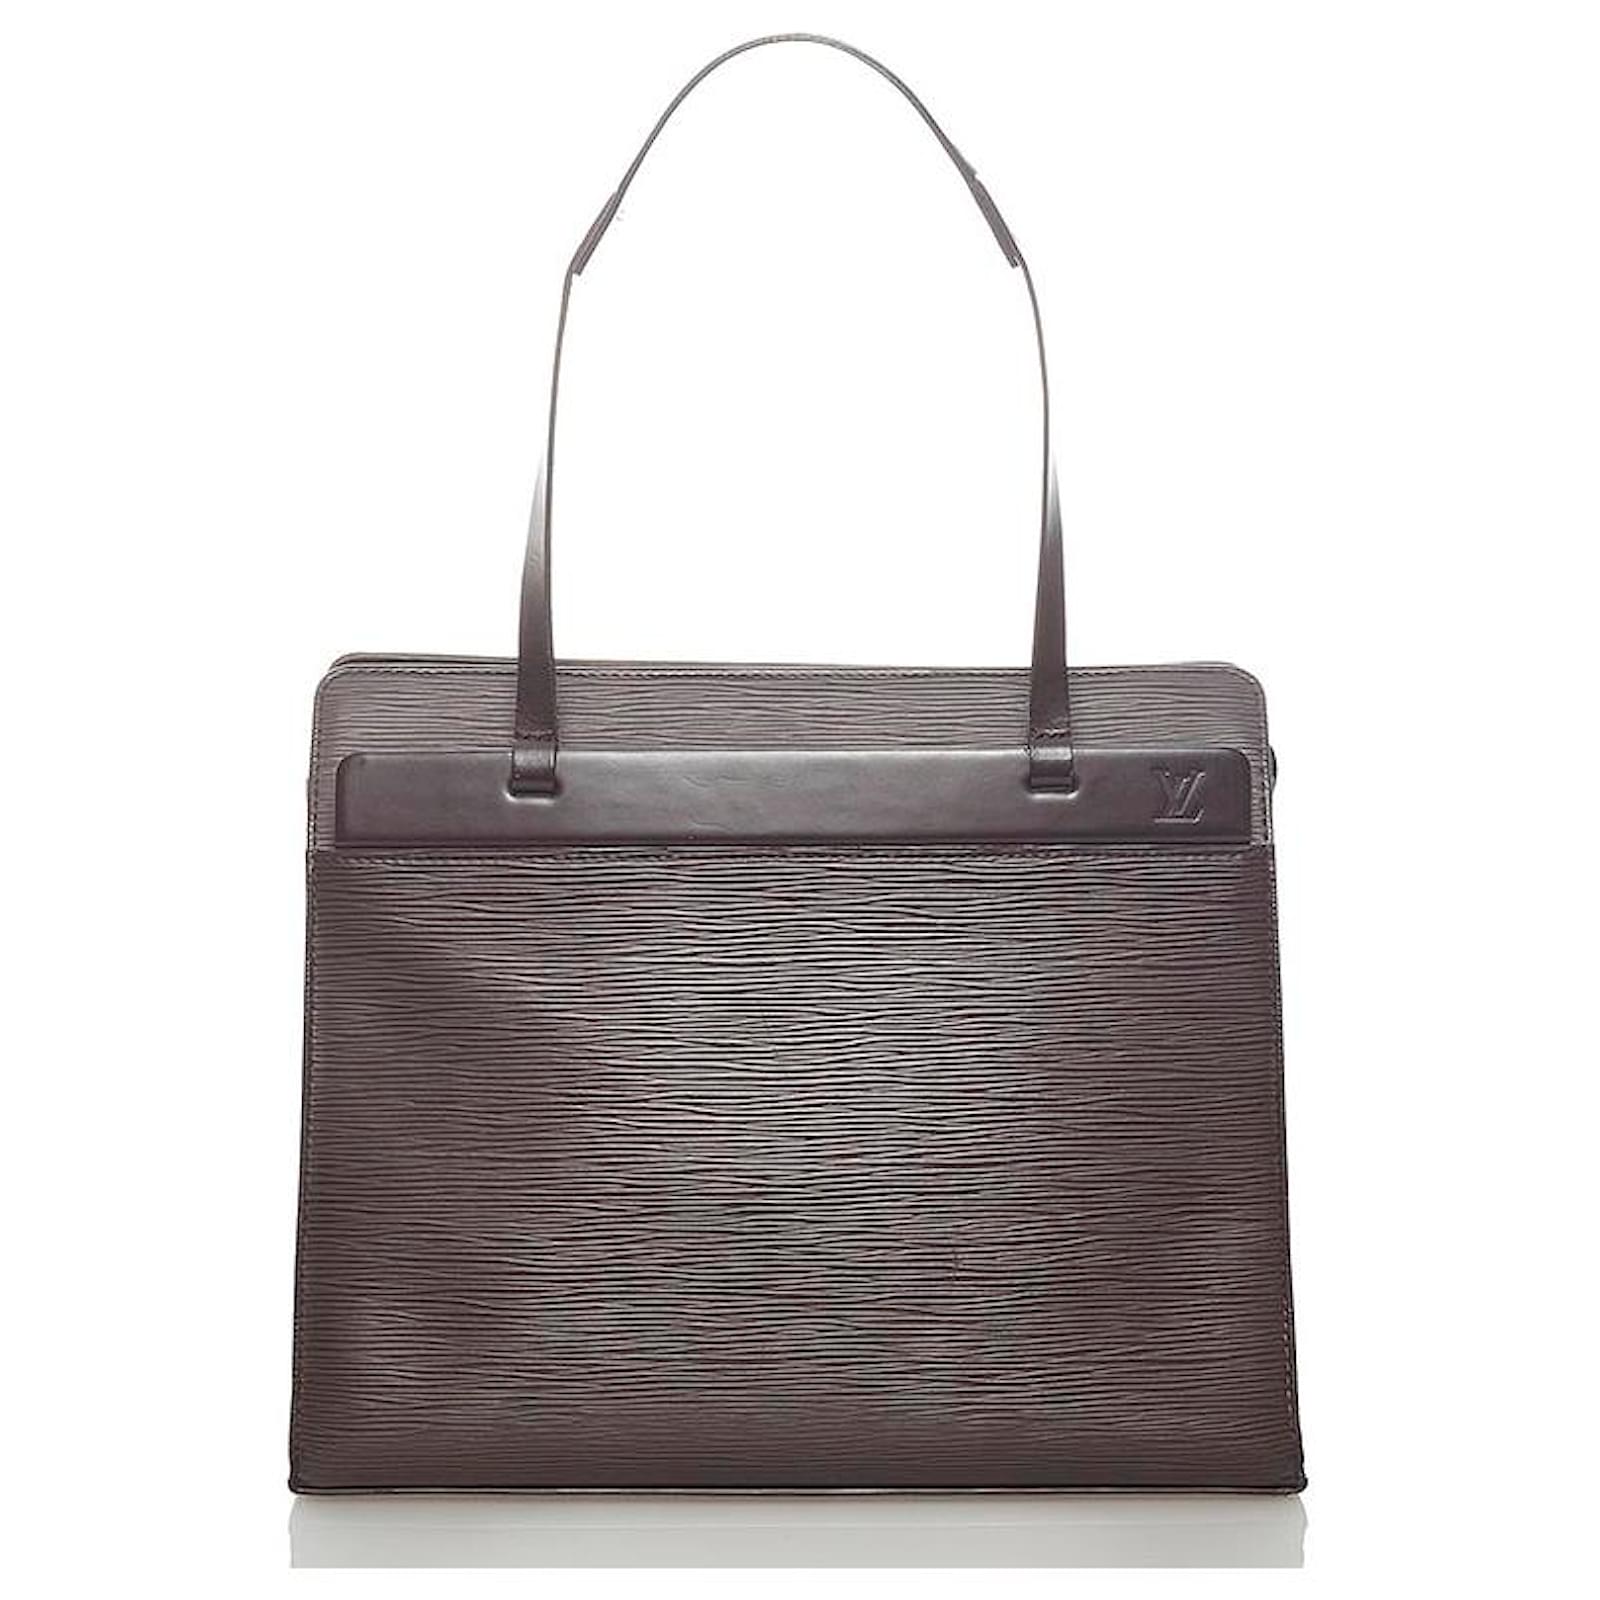 Louis Vuitton Croisette handbag in black epi leather